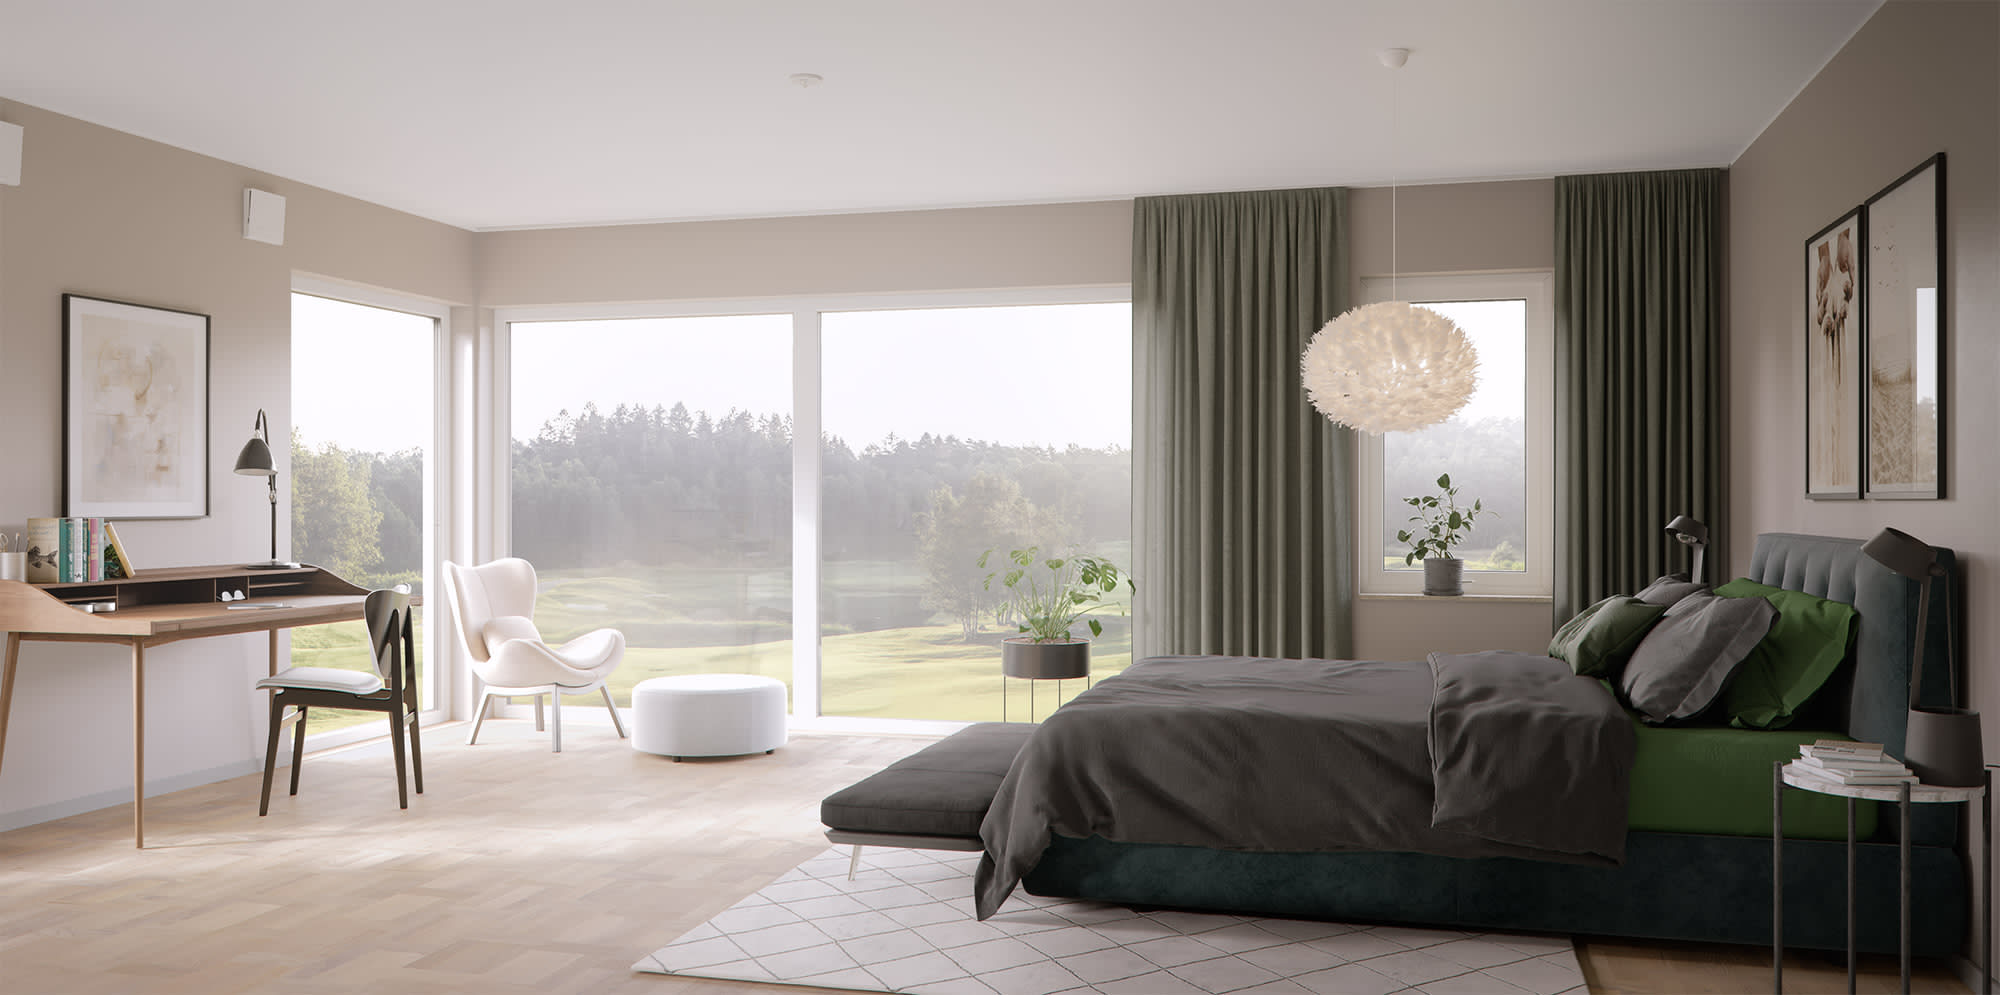 Master bedroom Villa Avenbok 206 kvm, inredningsstil Fjord, illustration